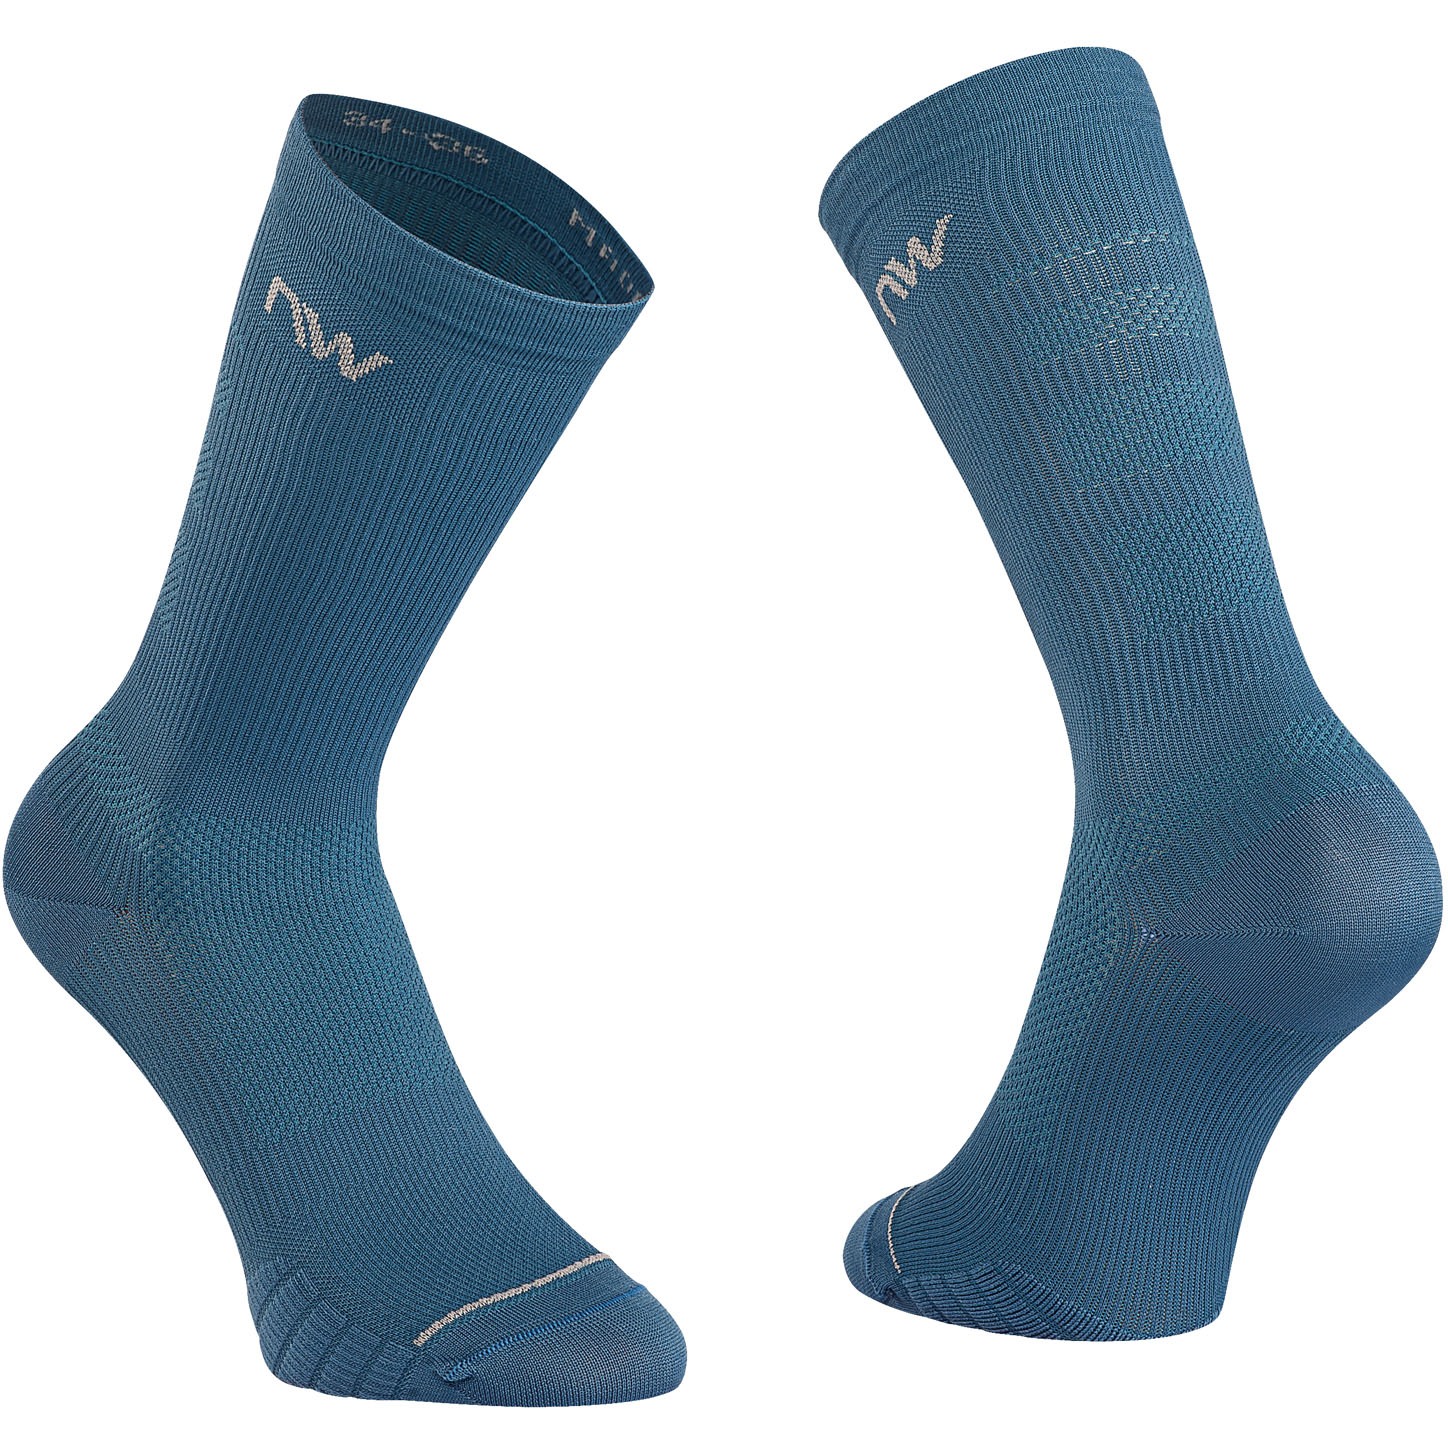 Produktbild von Northwave Extreme Pro Socken - deep blue/light grey 29